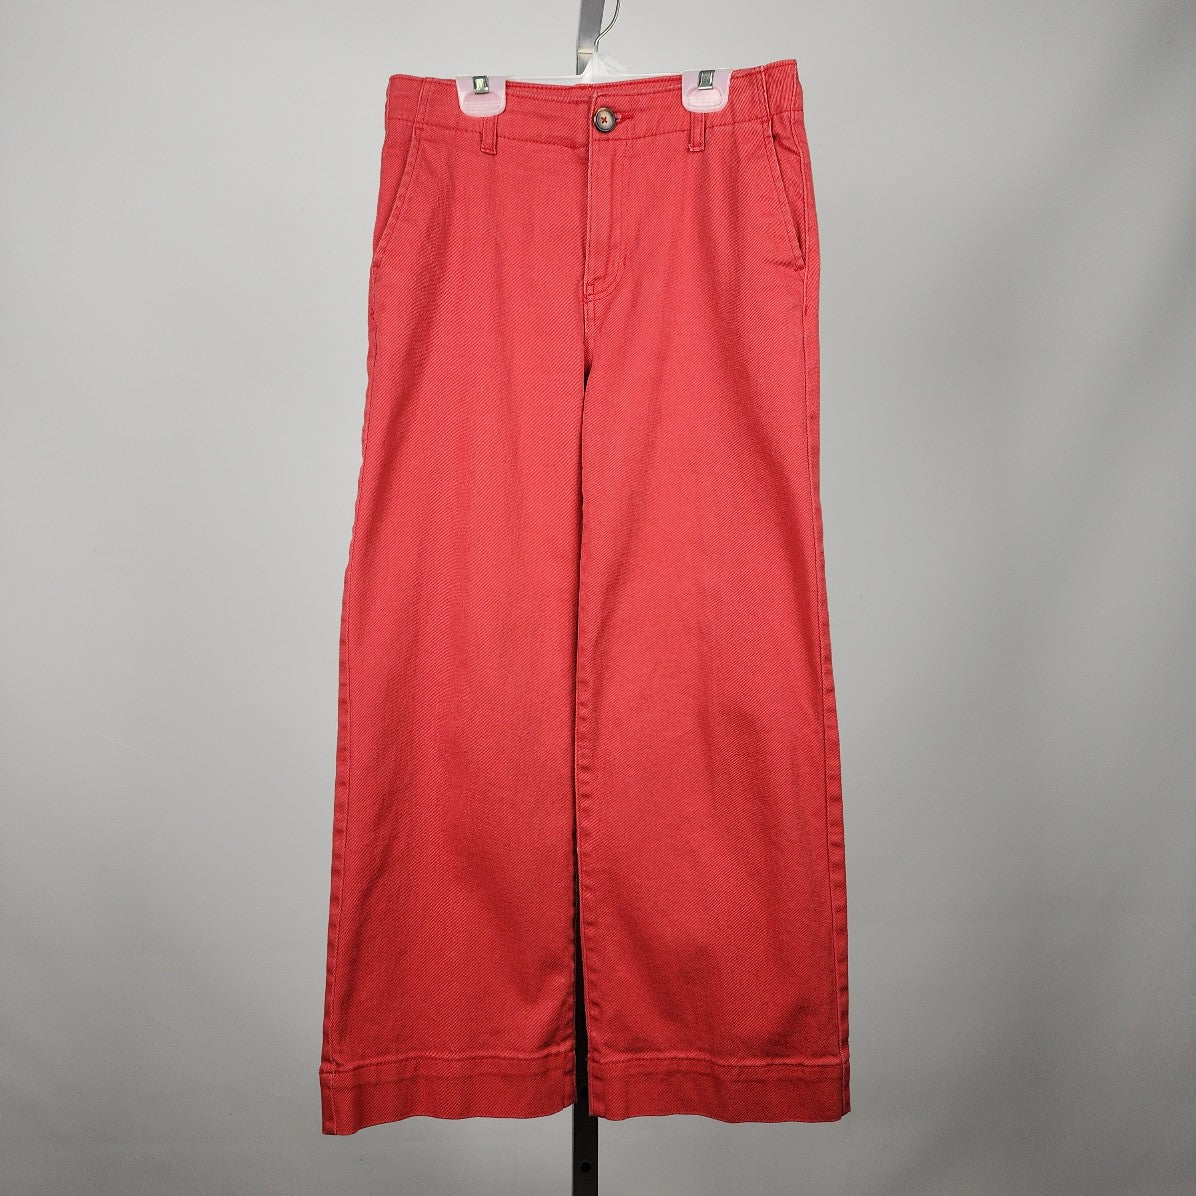 Joe Fresh Orange Cotton High Rise Wide Leg Crop Pants Size 26